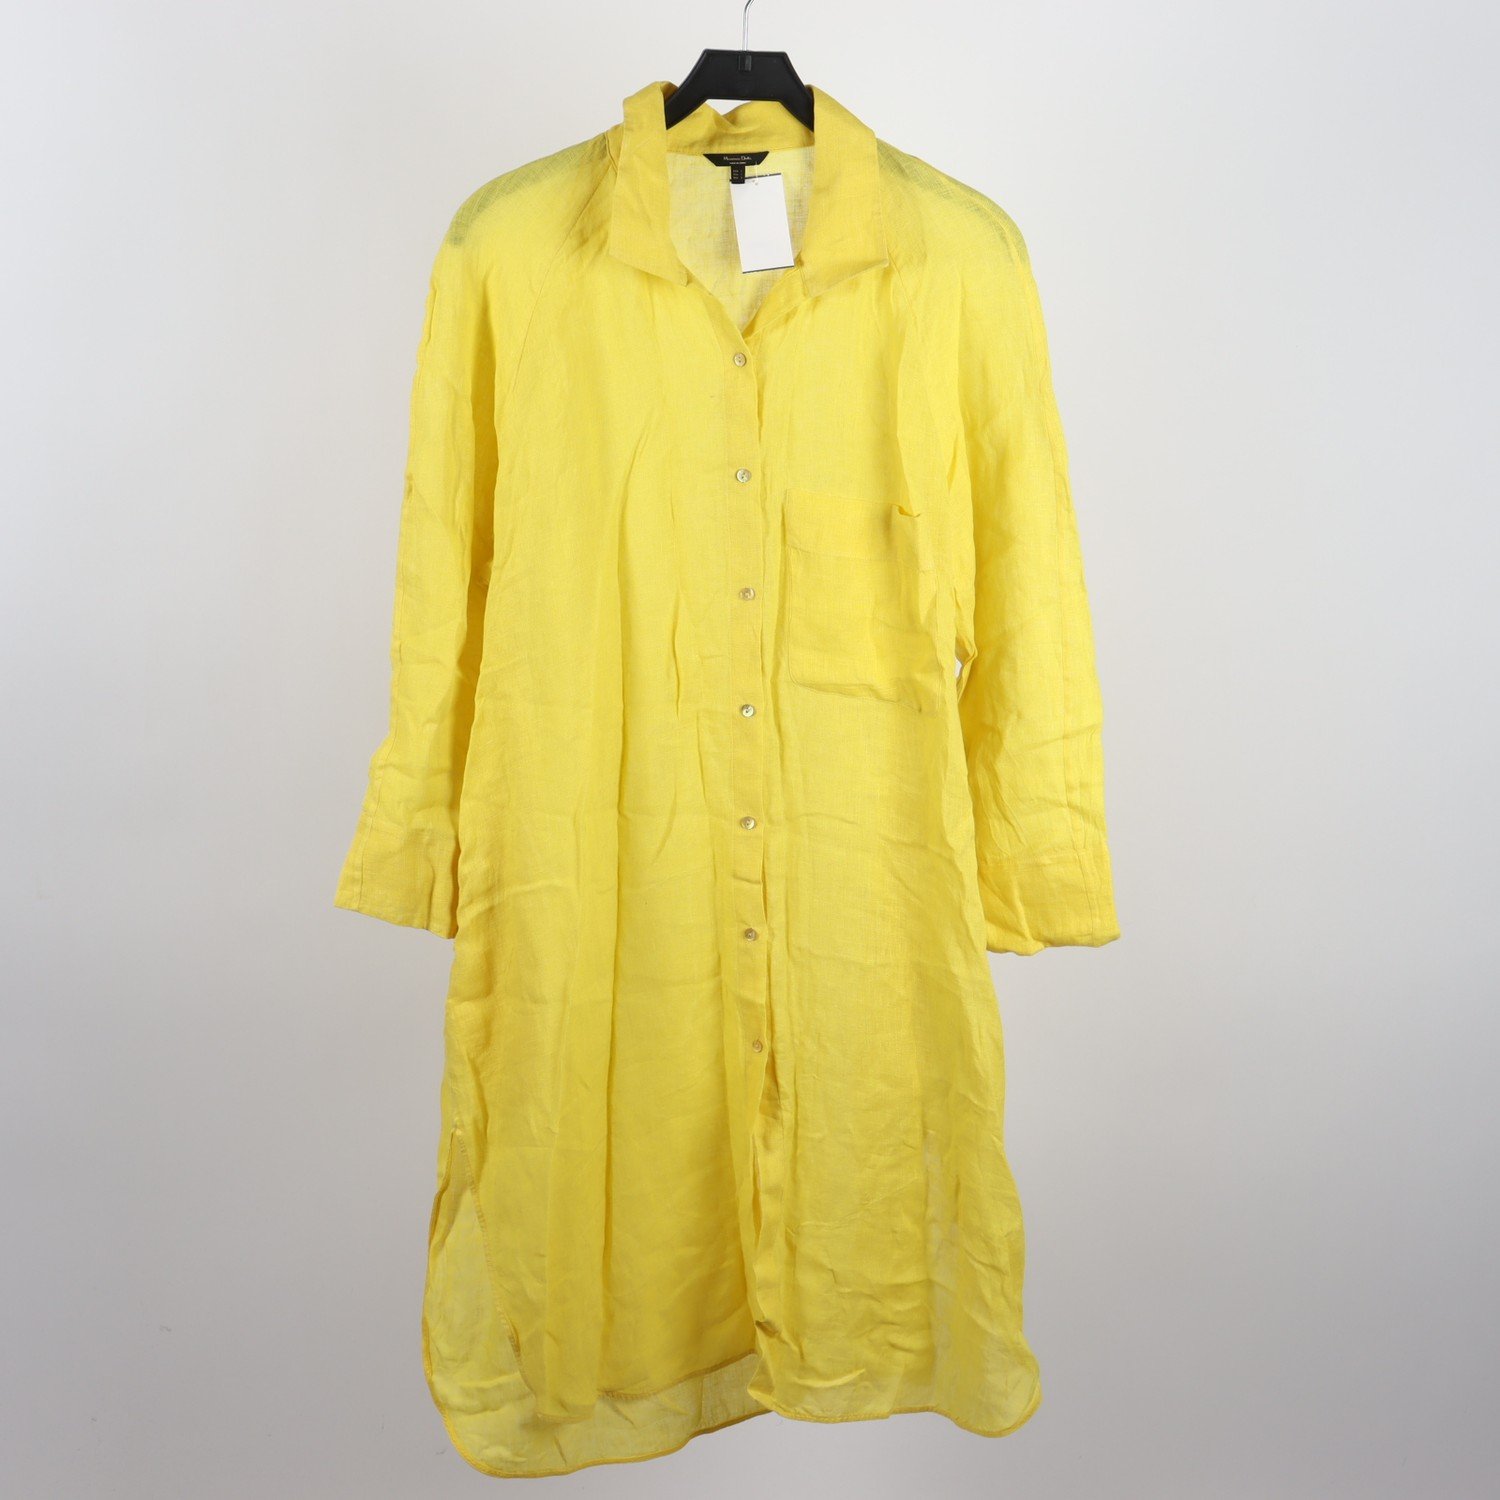 Klänning, Massimo Dutti, gul, 100 % linne, stl. L